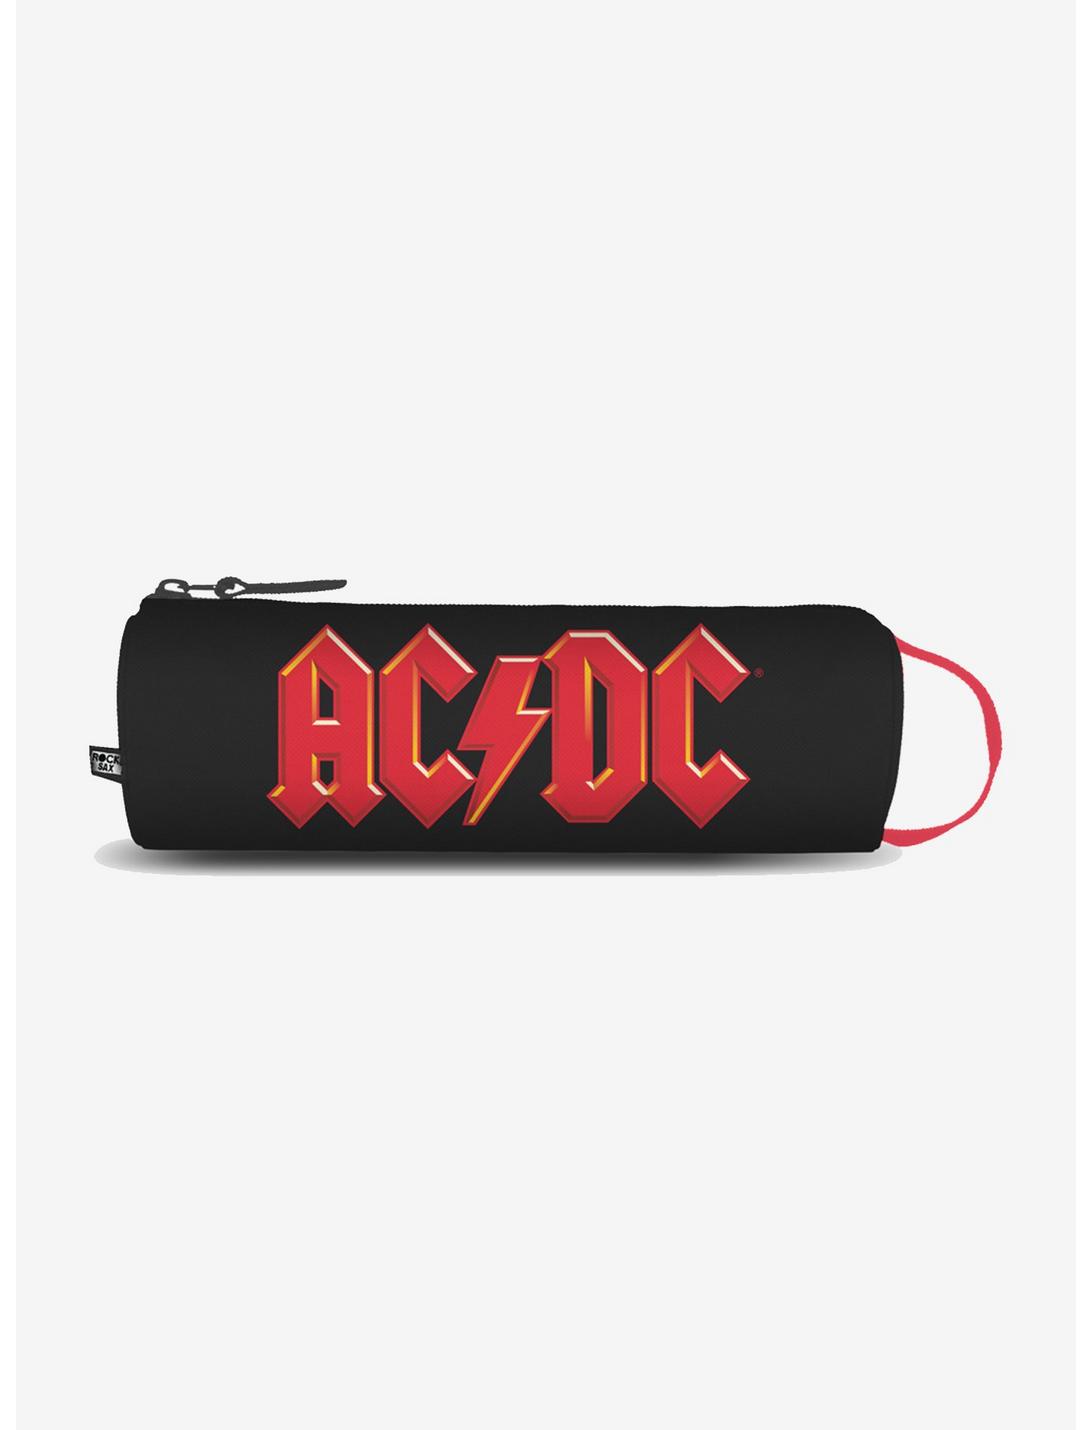 Rocksax AC/DC Logo Pencil Case, , hi-res